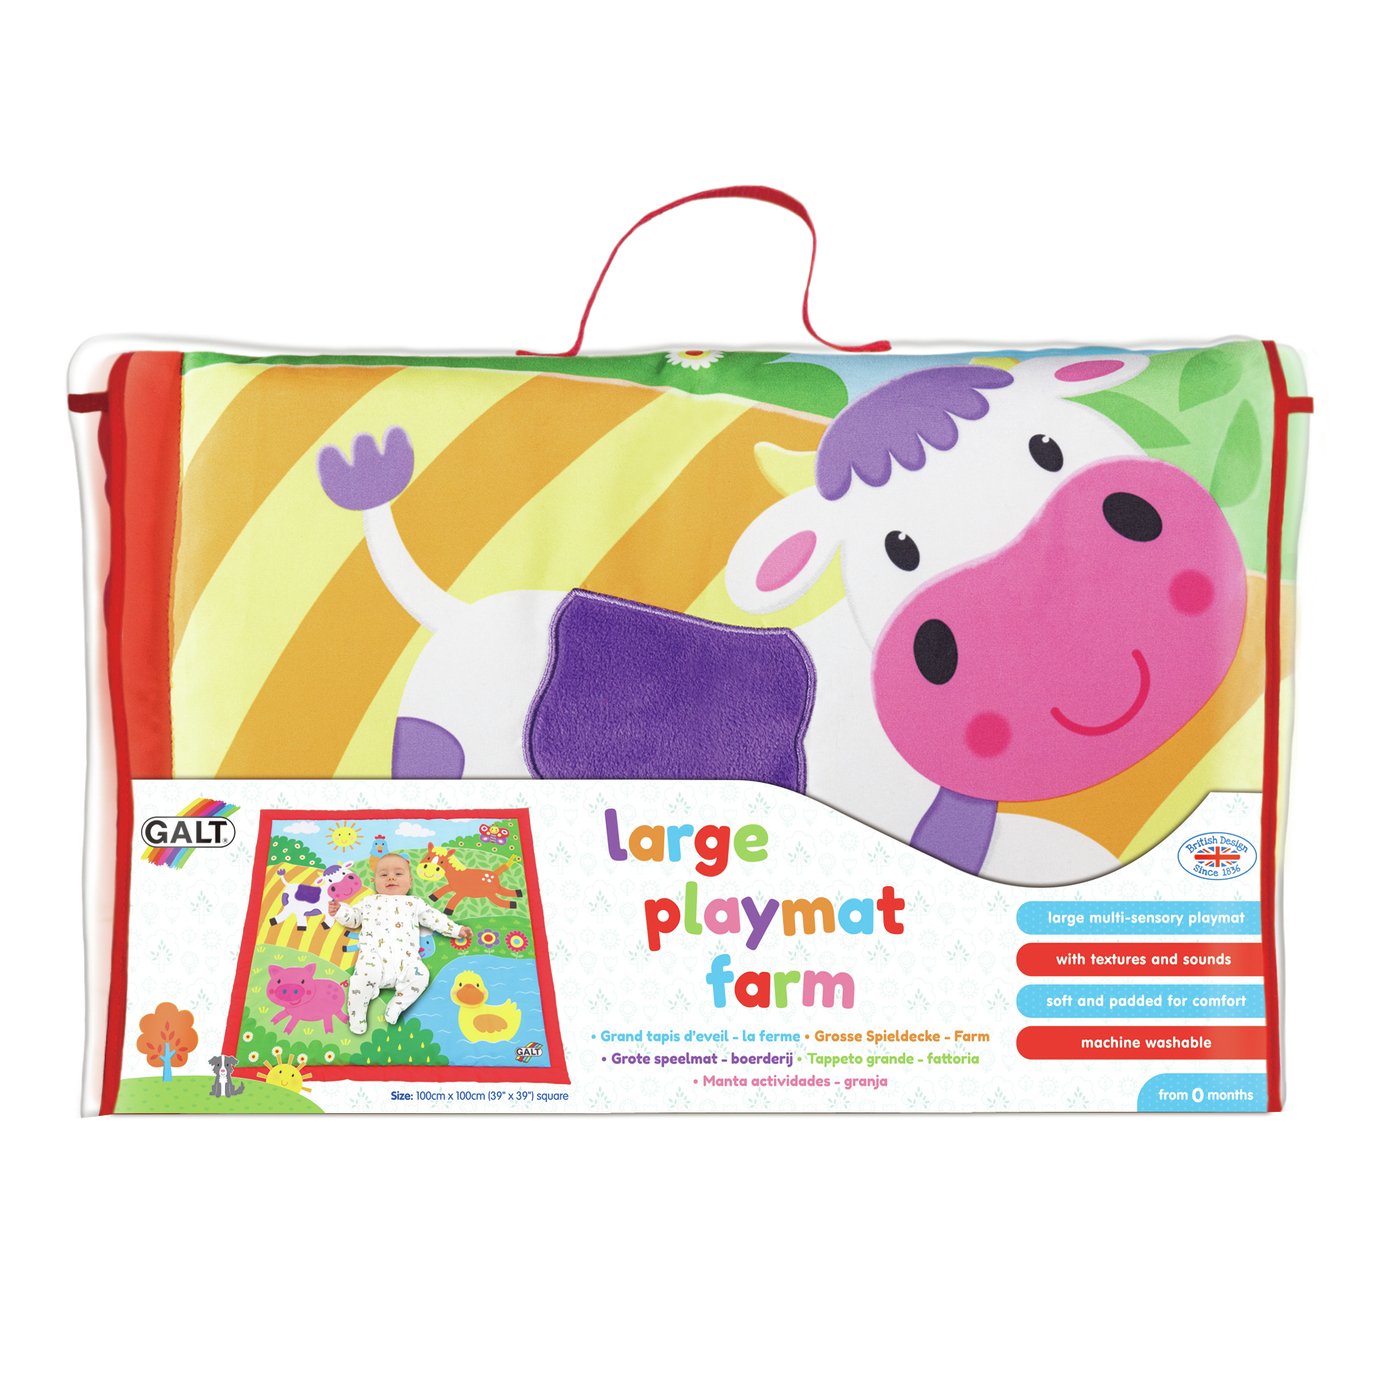 GALT Large Playmat Farm Review